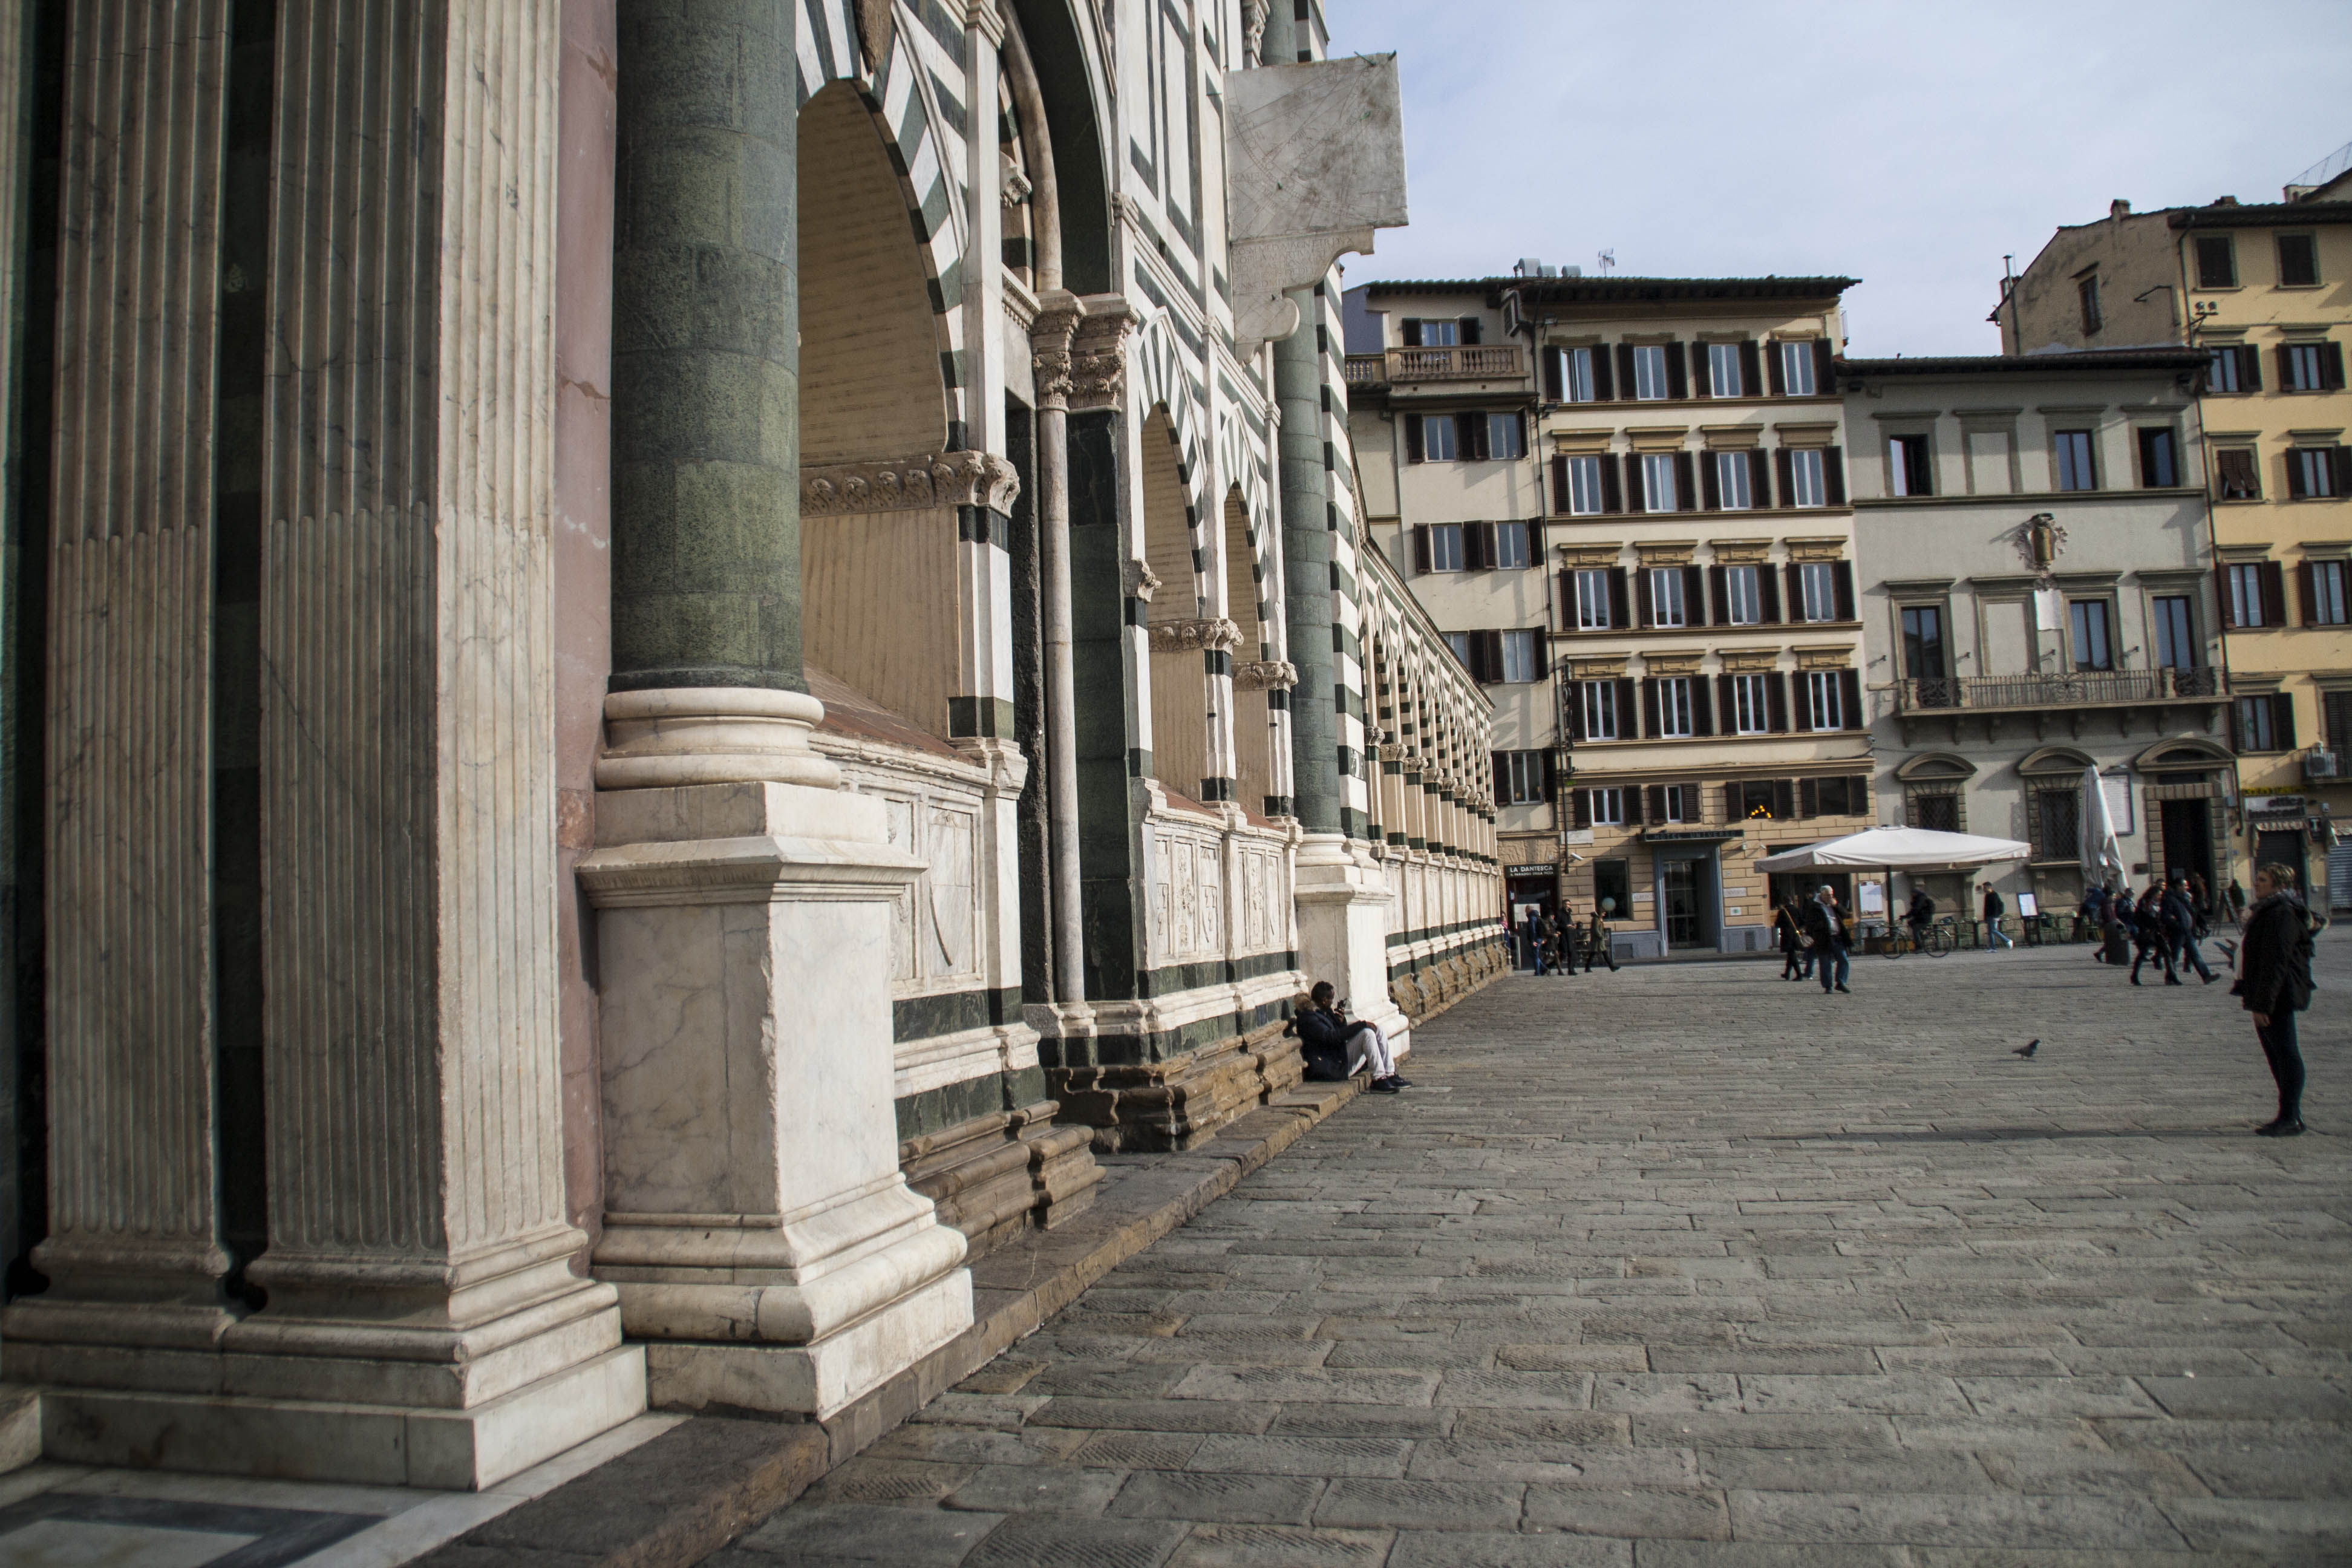 Firenze Edifici Monumenti Chiesa S. Maria Novella 